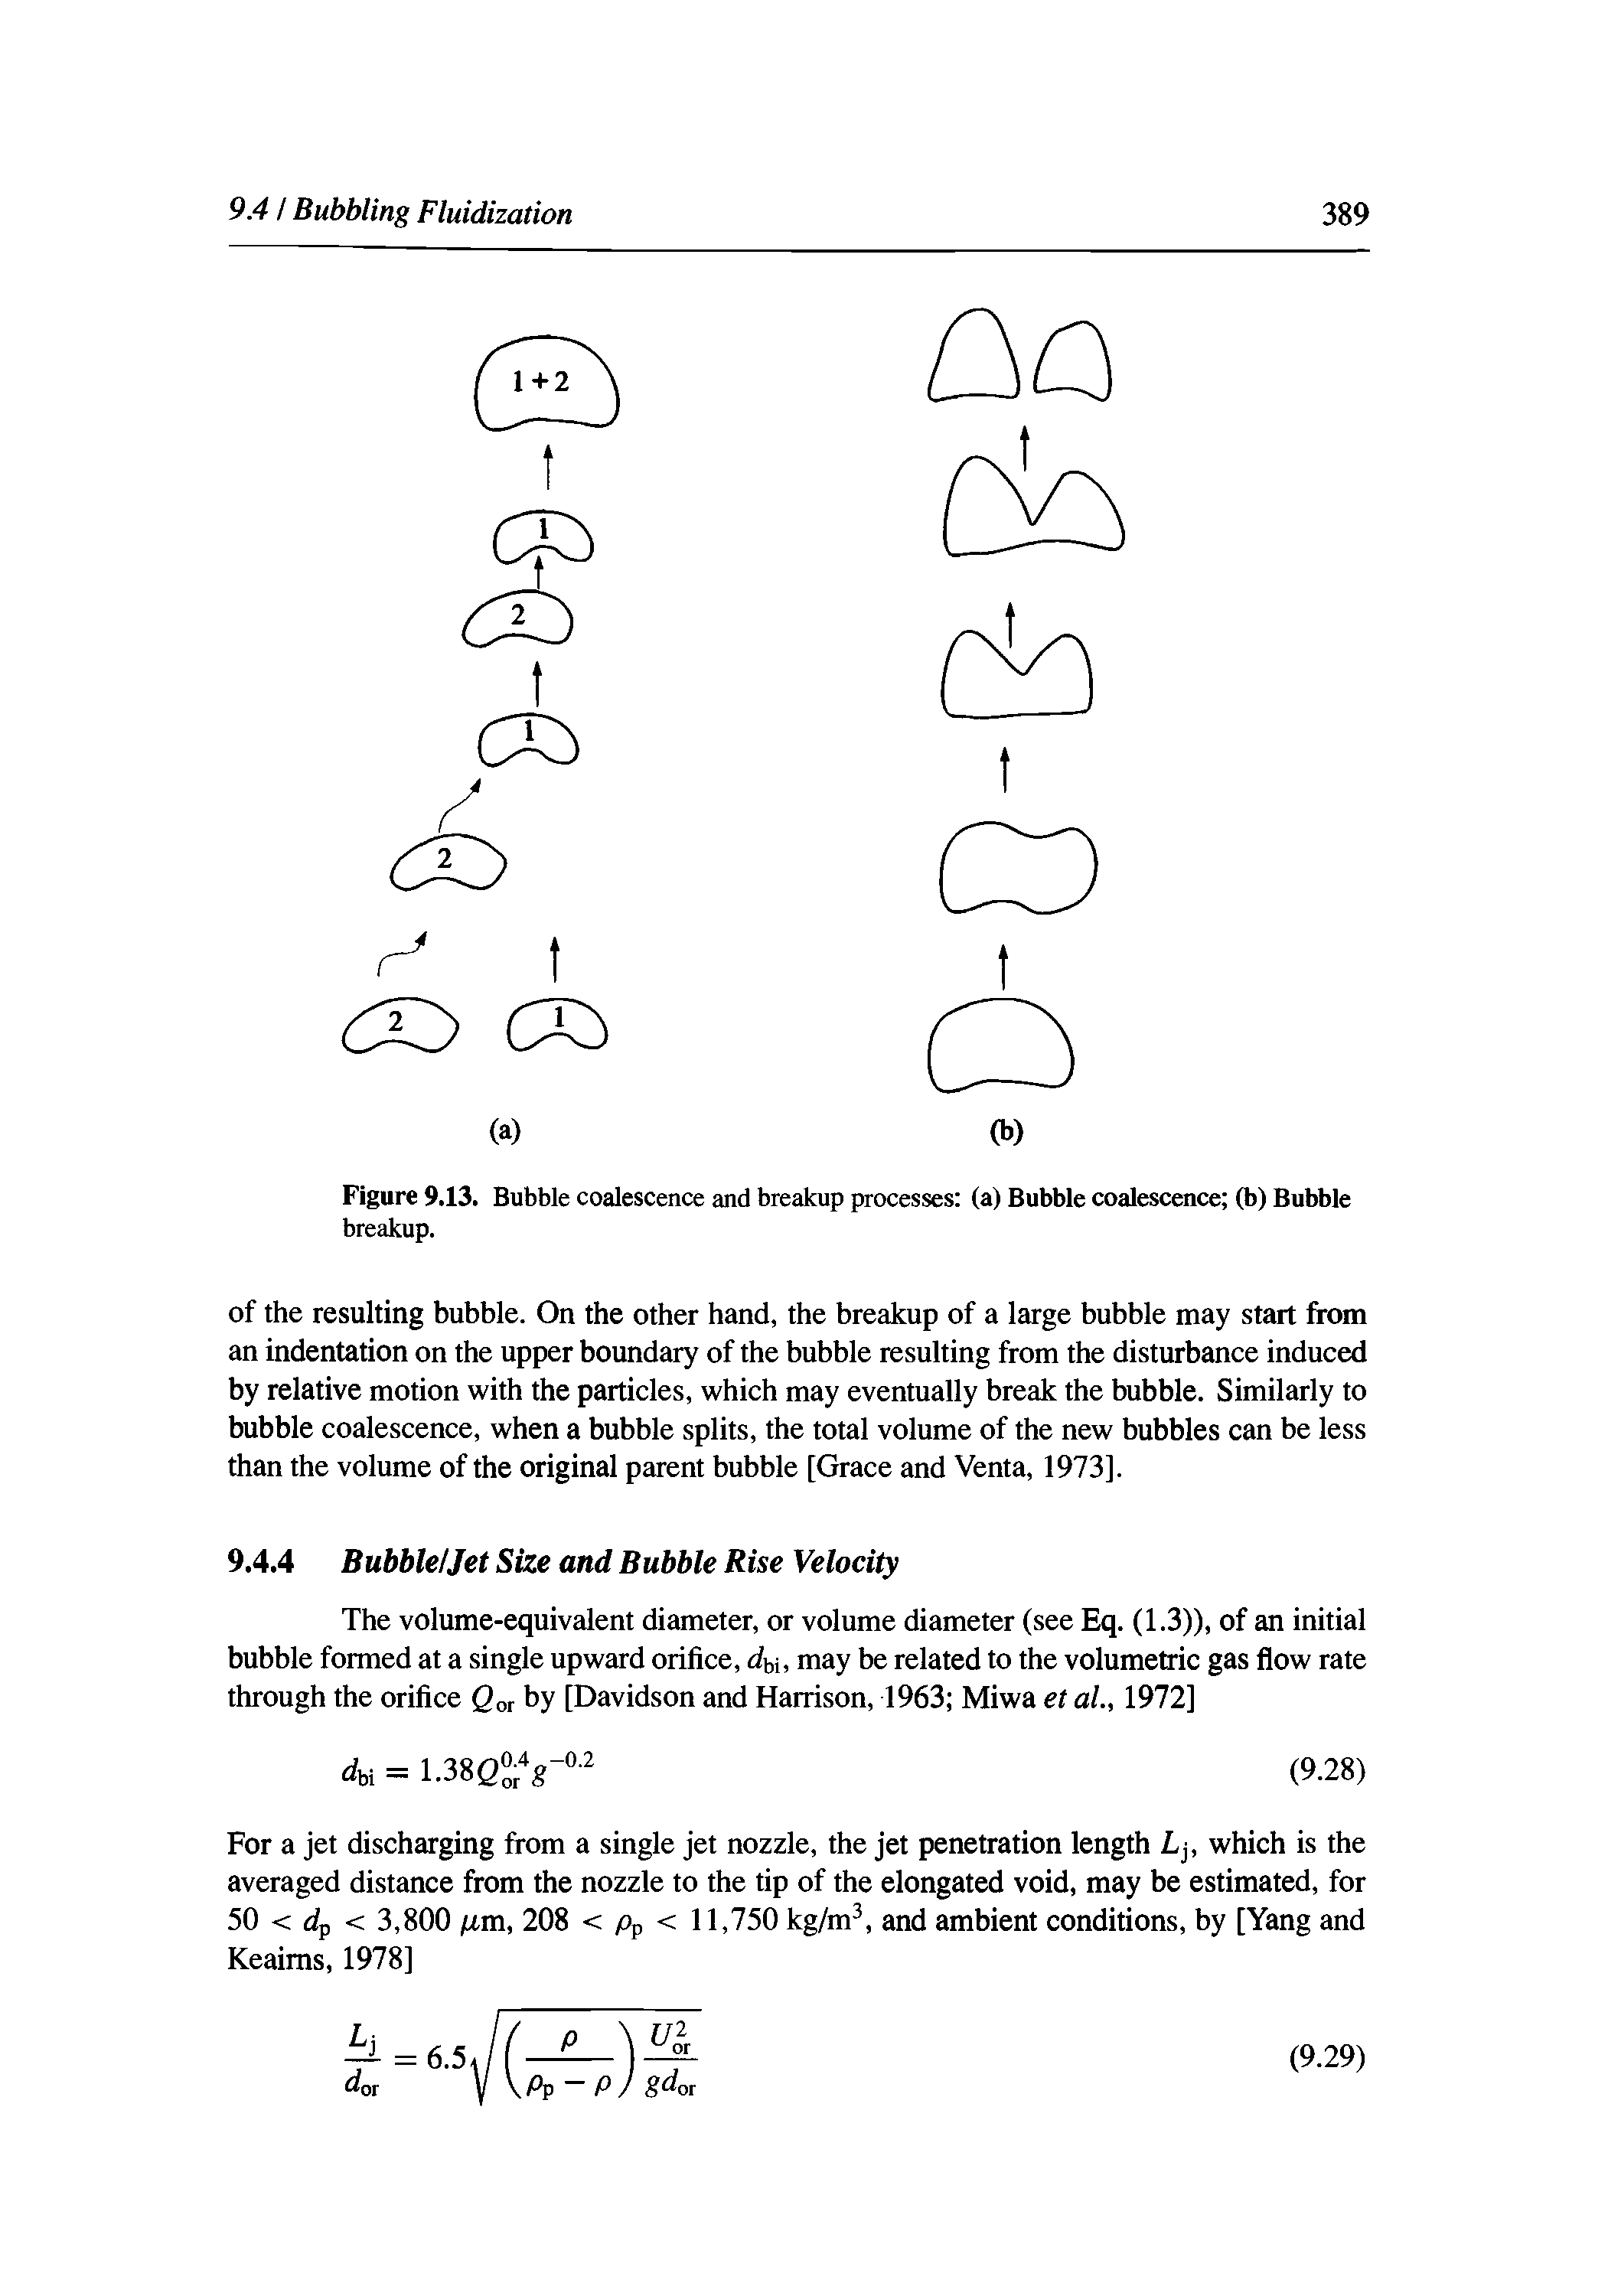 Figure 9.13. Bubble coalescence and breakup processes (a) Bubble coalescence (b) Bubble breakup.